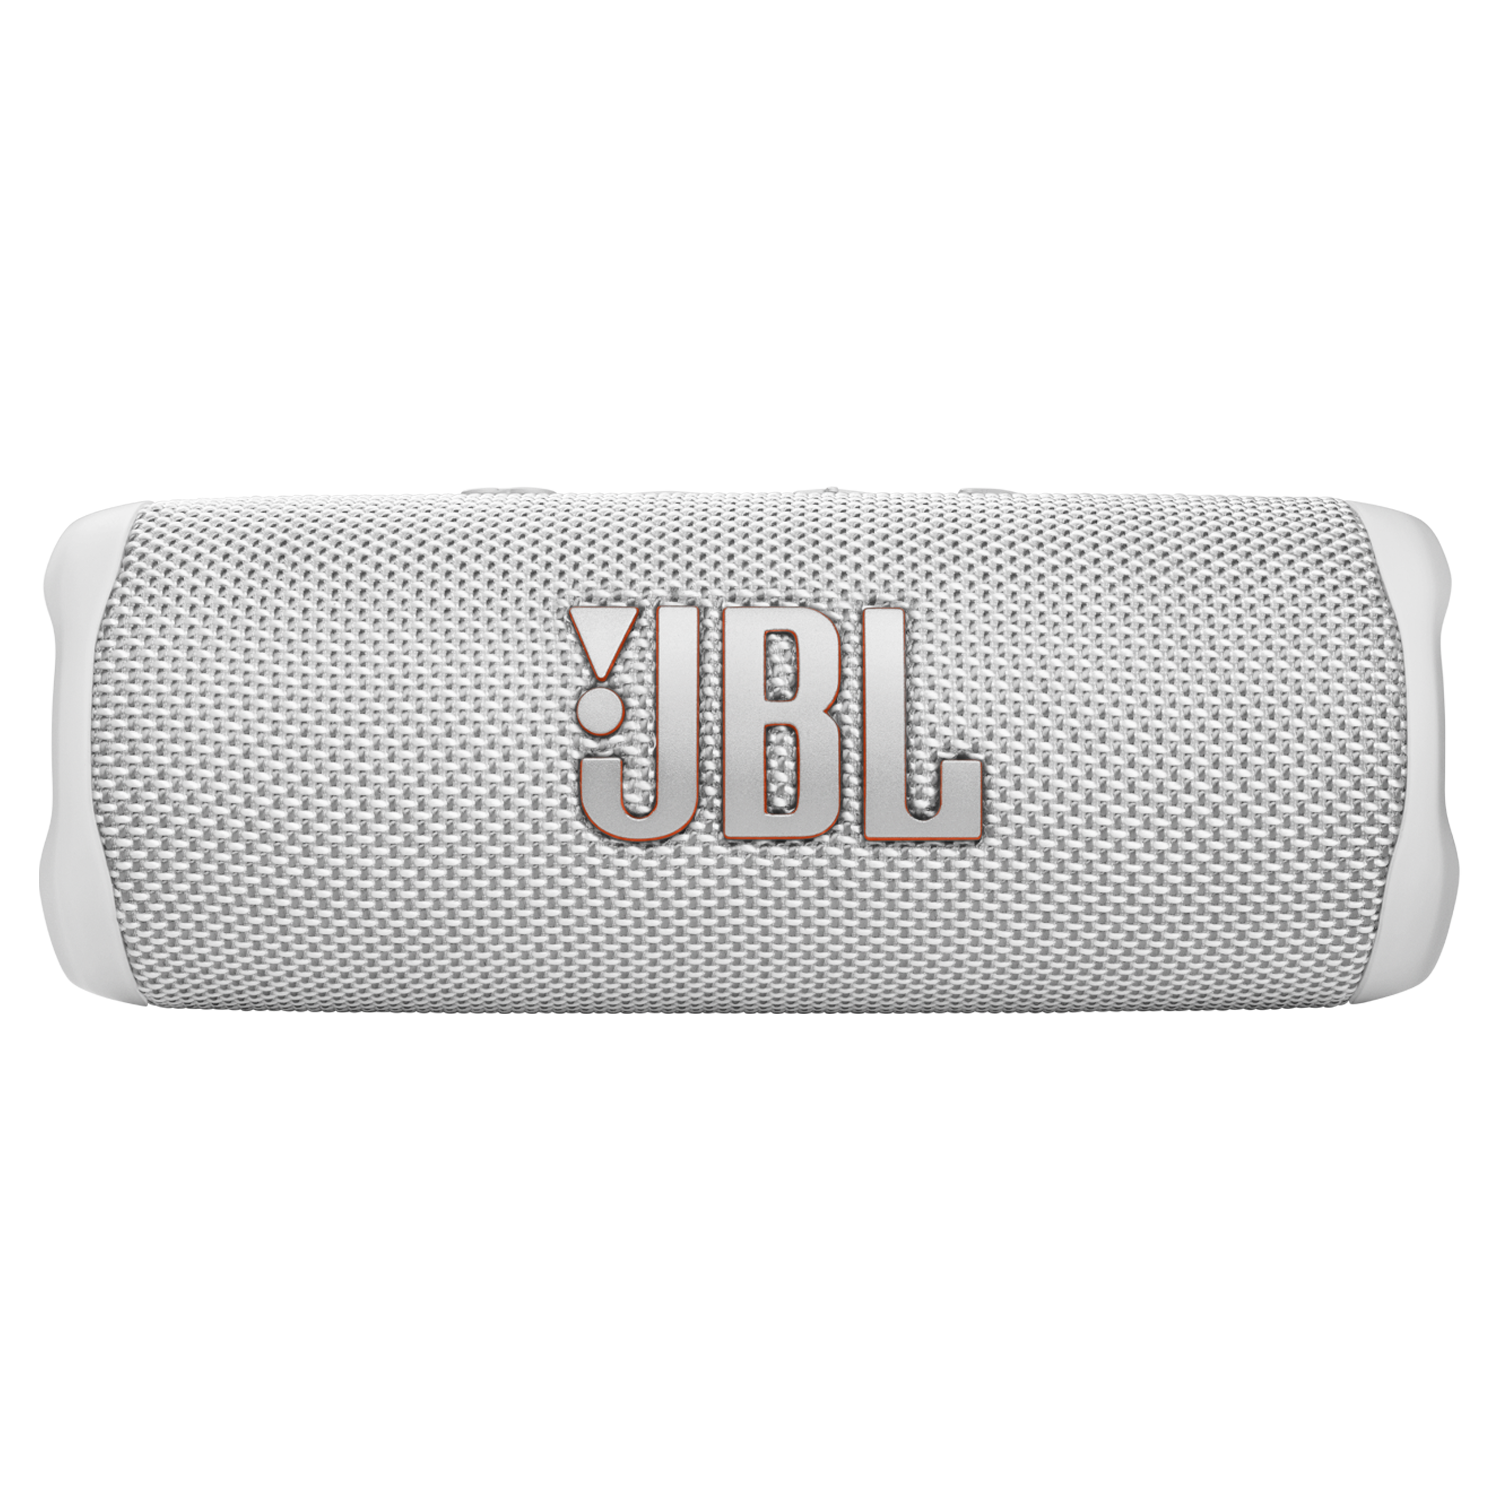 Caixa de Som JBL Flip 6 - Branco